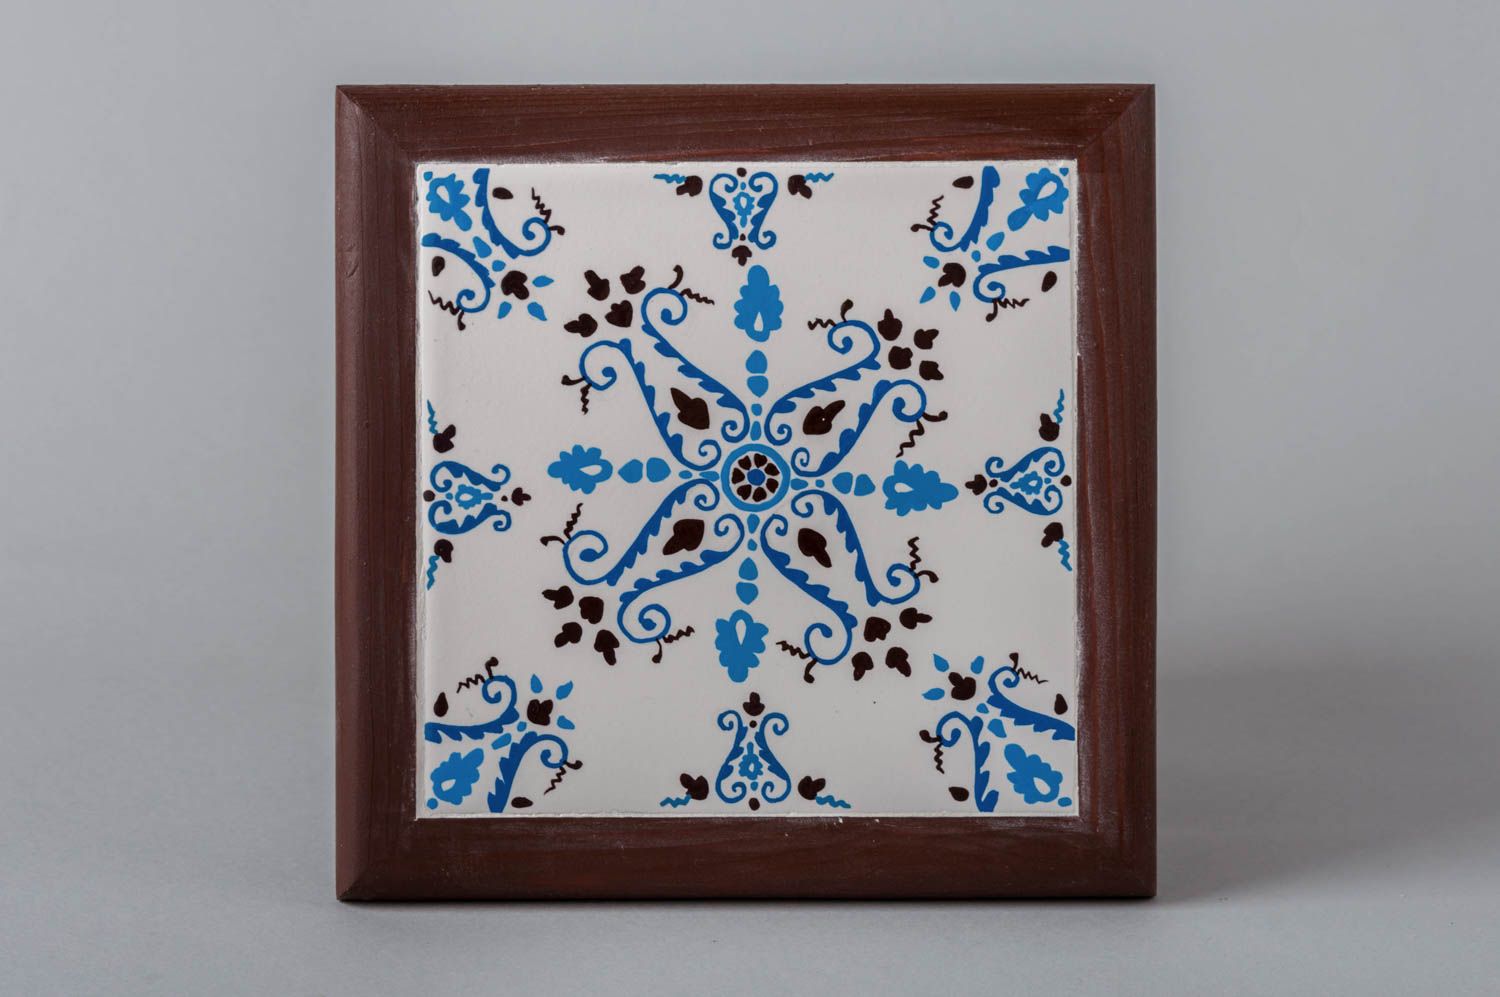 Handmade ceramic tile in frame unusual interior decor designer picture photo 2